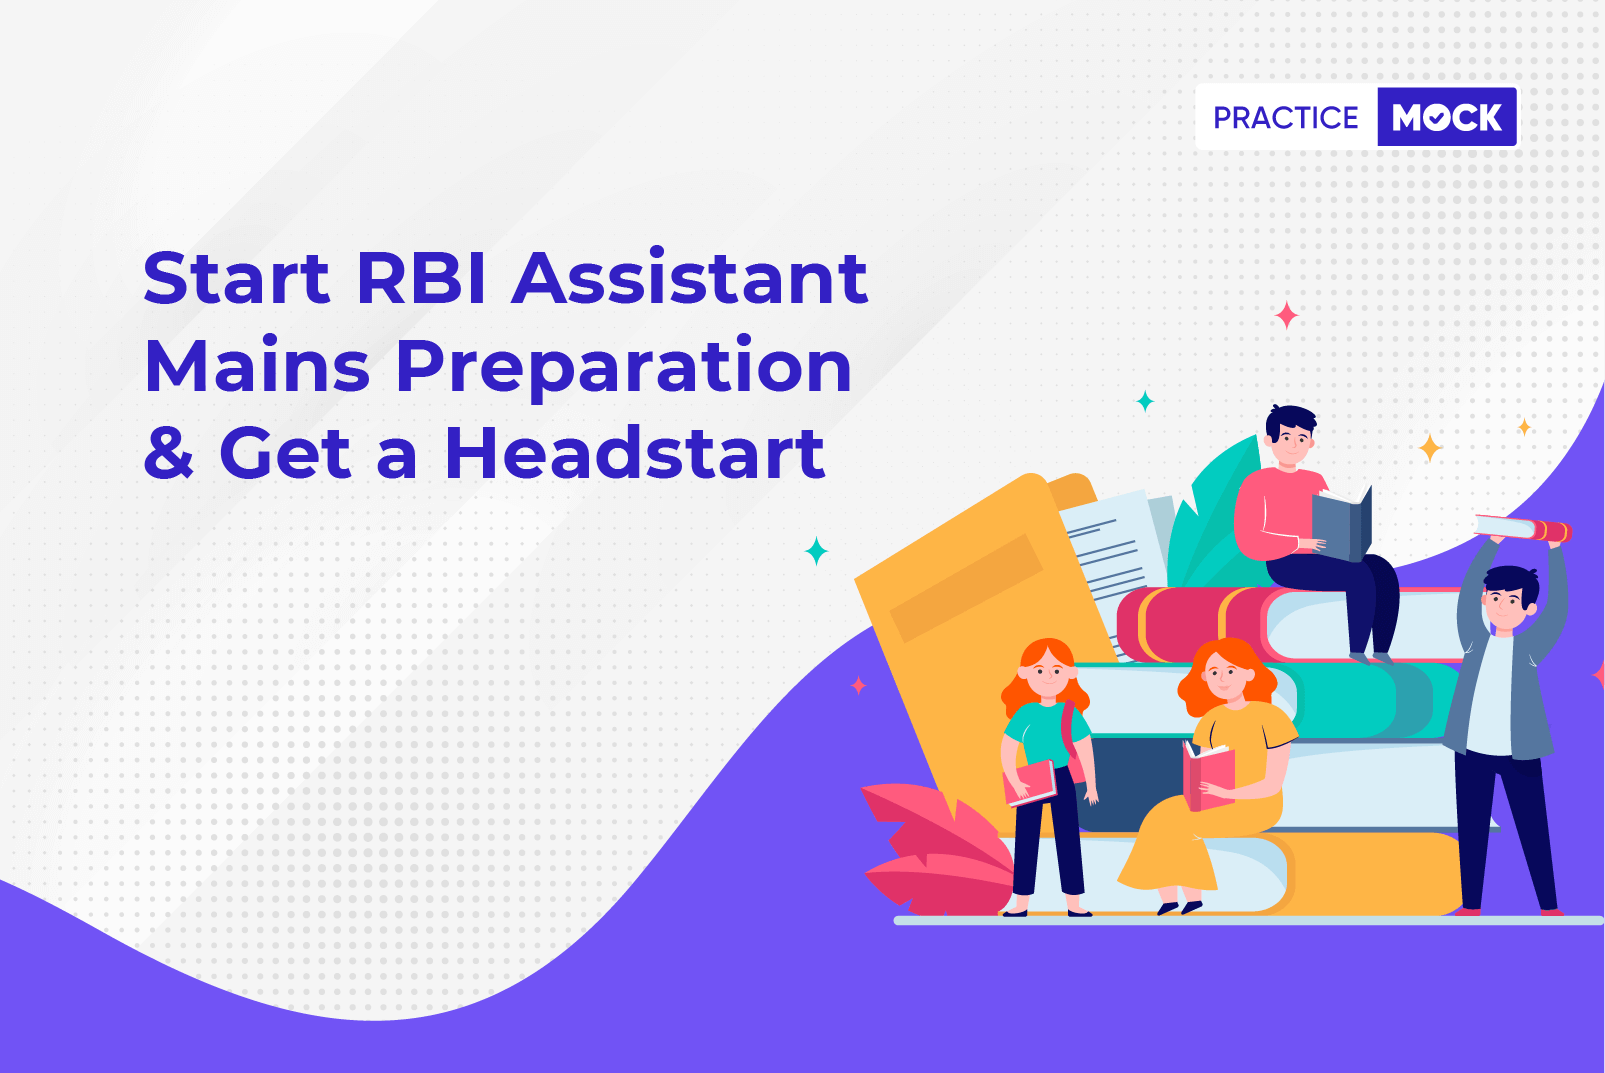 Start RBI Asst. Mains Prep. & Get a Headstart